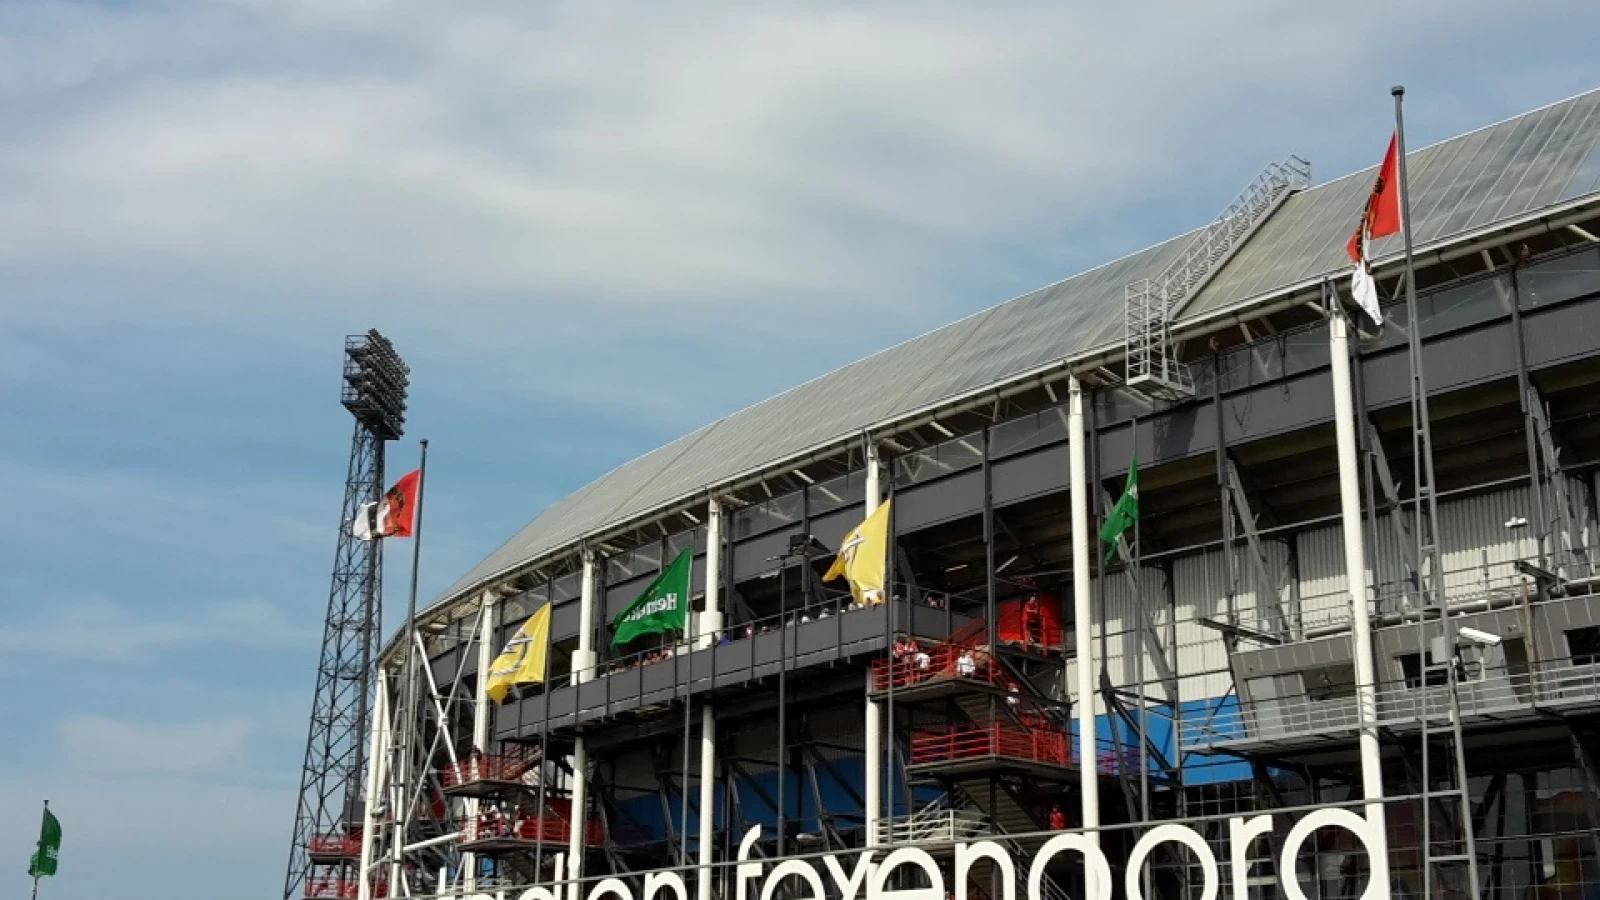 Samenwerking bouwbedrijven Heijmans en AM starten dit jaar met Feyenoord City